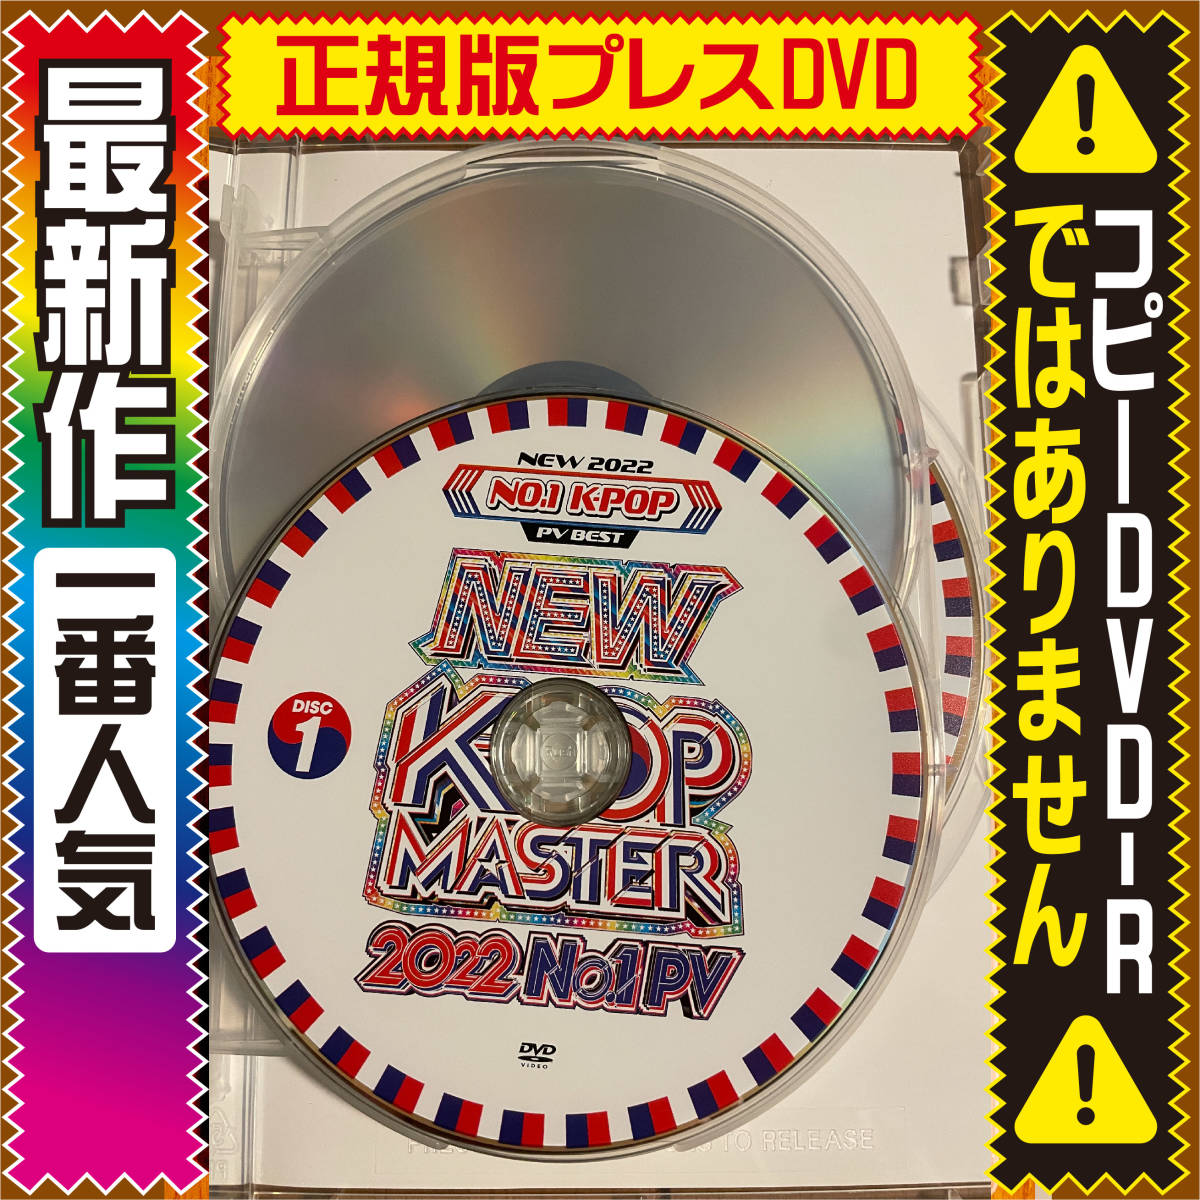 【超最新洋楽DVD】New K-Pop Master 2022 No.1 PV正規版DVD_画像3